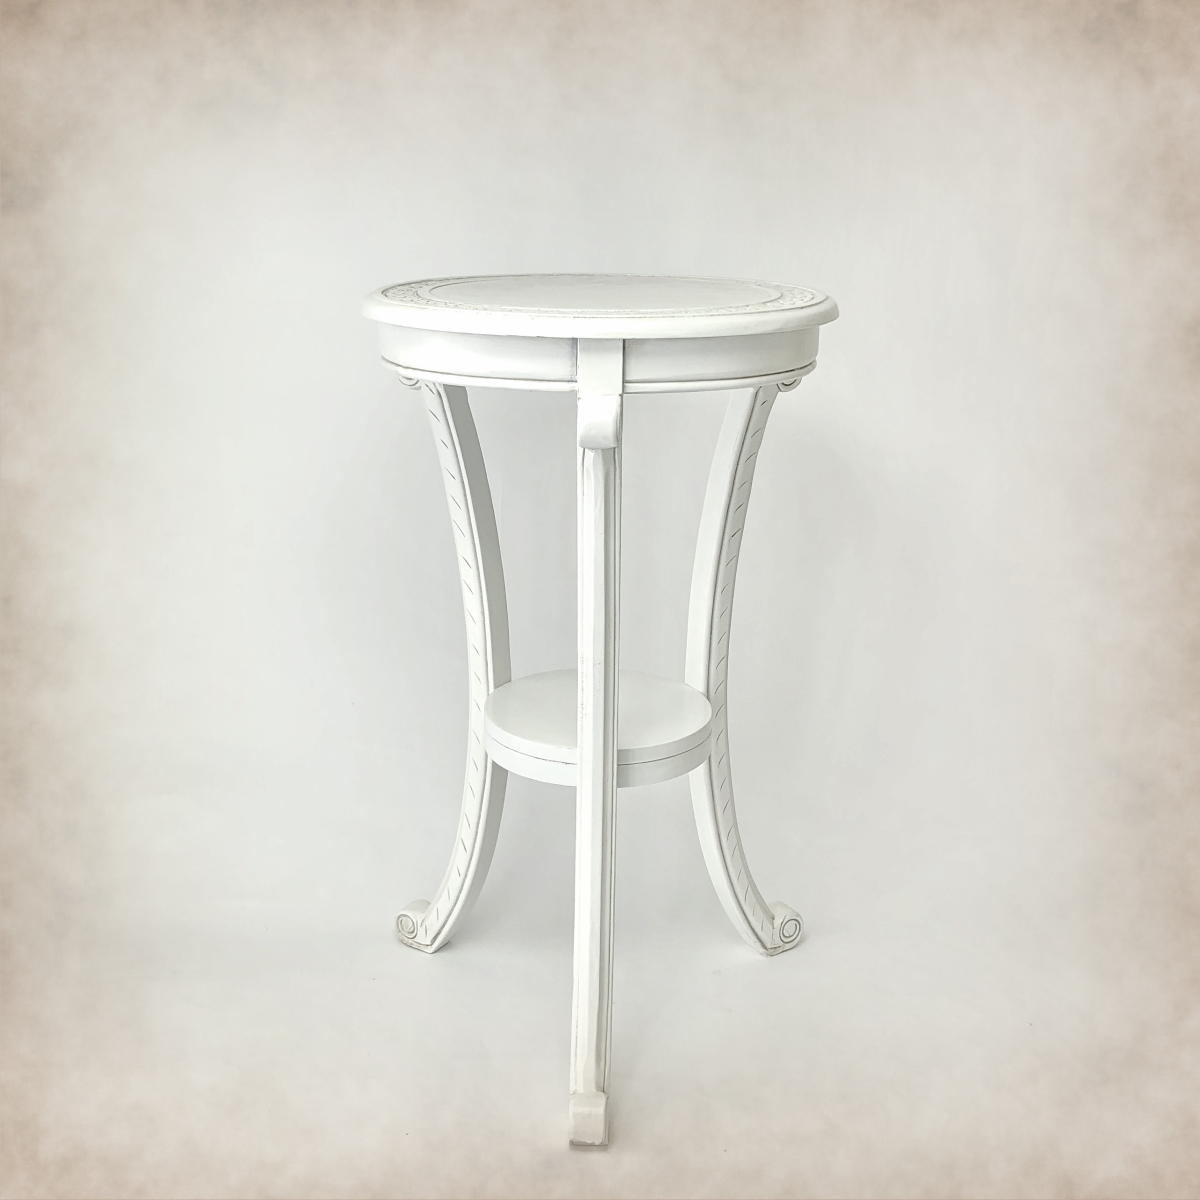 Jc007w-30 Pestal Table - White